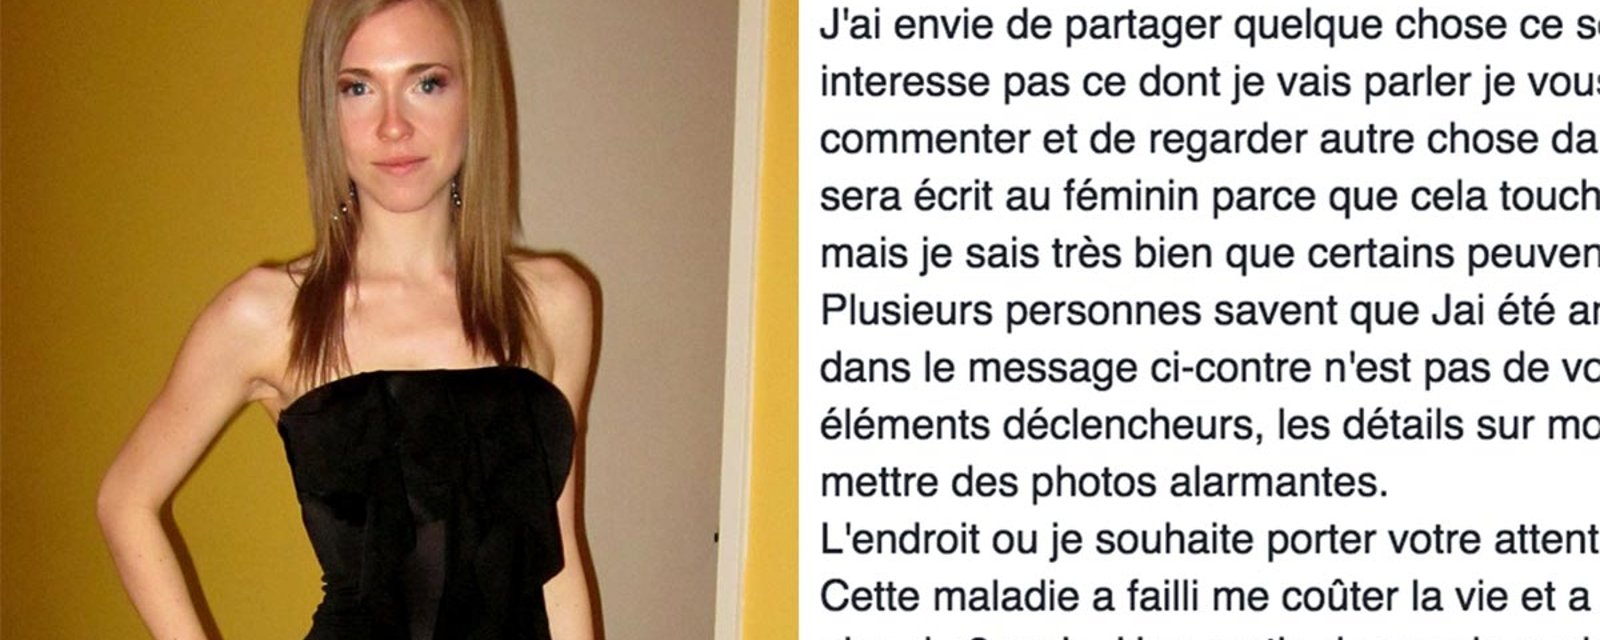 Une ex-anorexique québécoise lance un cri du coeur sur Facebook... Aujourd'hui, elle est méconnaissable!